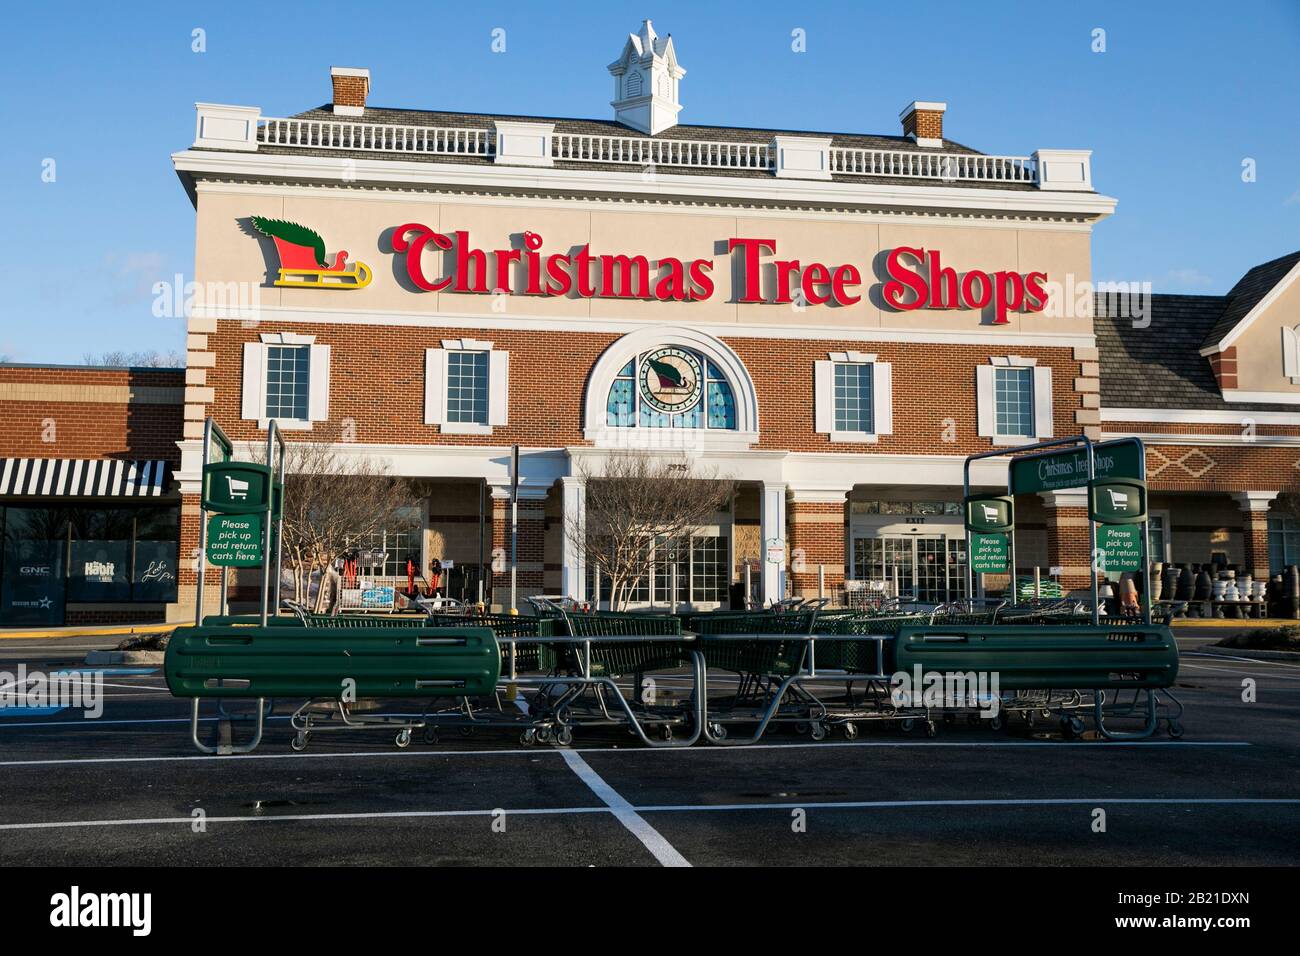 Un logo à l'extérieur d'un magasin de vente au détail de Christmas Tree Shops à Waldorf, dans le Maryland, le 27 février 2020. Banque D'Images